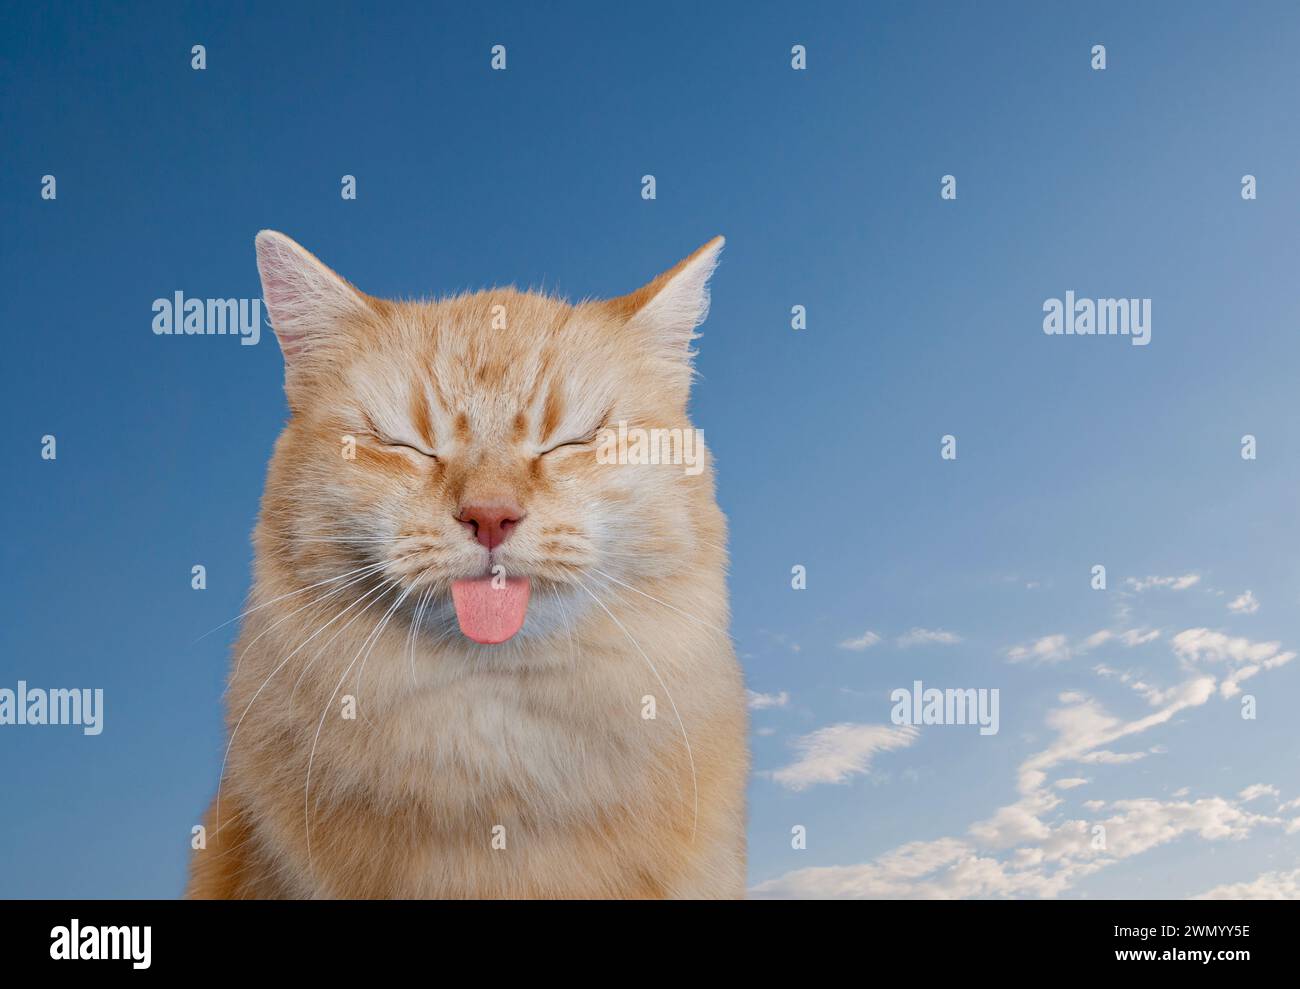 Un chat tabby orange, la langue dehors et les yeux bien fermés, porte une expression de dégoût dans une photo drôle de chat sur le dégoût, le dégoût et l'aversion. Banque D'Images